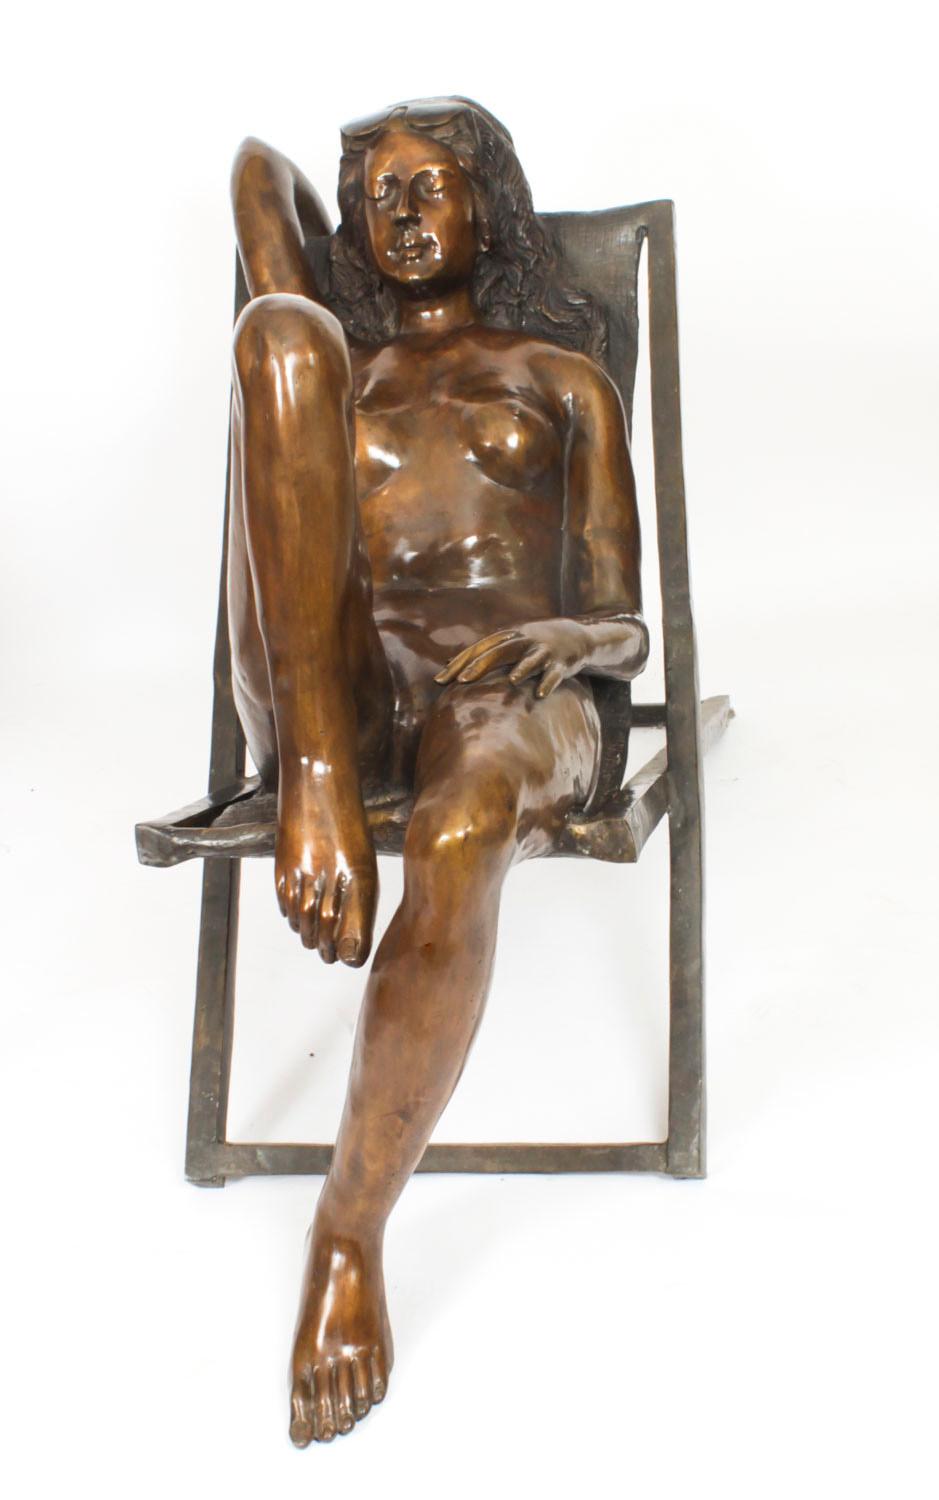 Dies ist ein großes Vintage-Paar von  nackte weibliche Figuren, Ende des 20. Jahrhunderts.

Die sonnenbadenden Akte sind aus Bronze im Wachsausschmelzverfahren hergestellt und zeigen die Damen auf Liegestühlen liegend.

Die Liebe zum Detail dieser